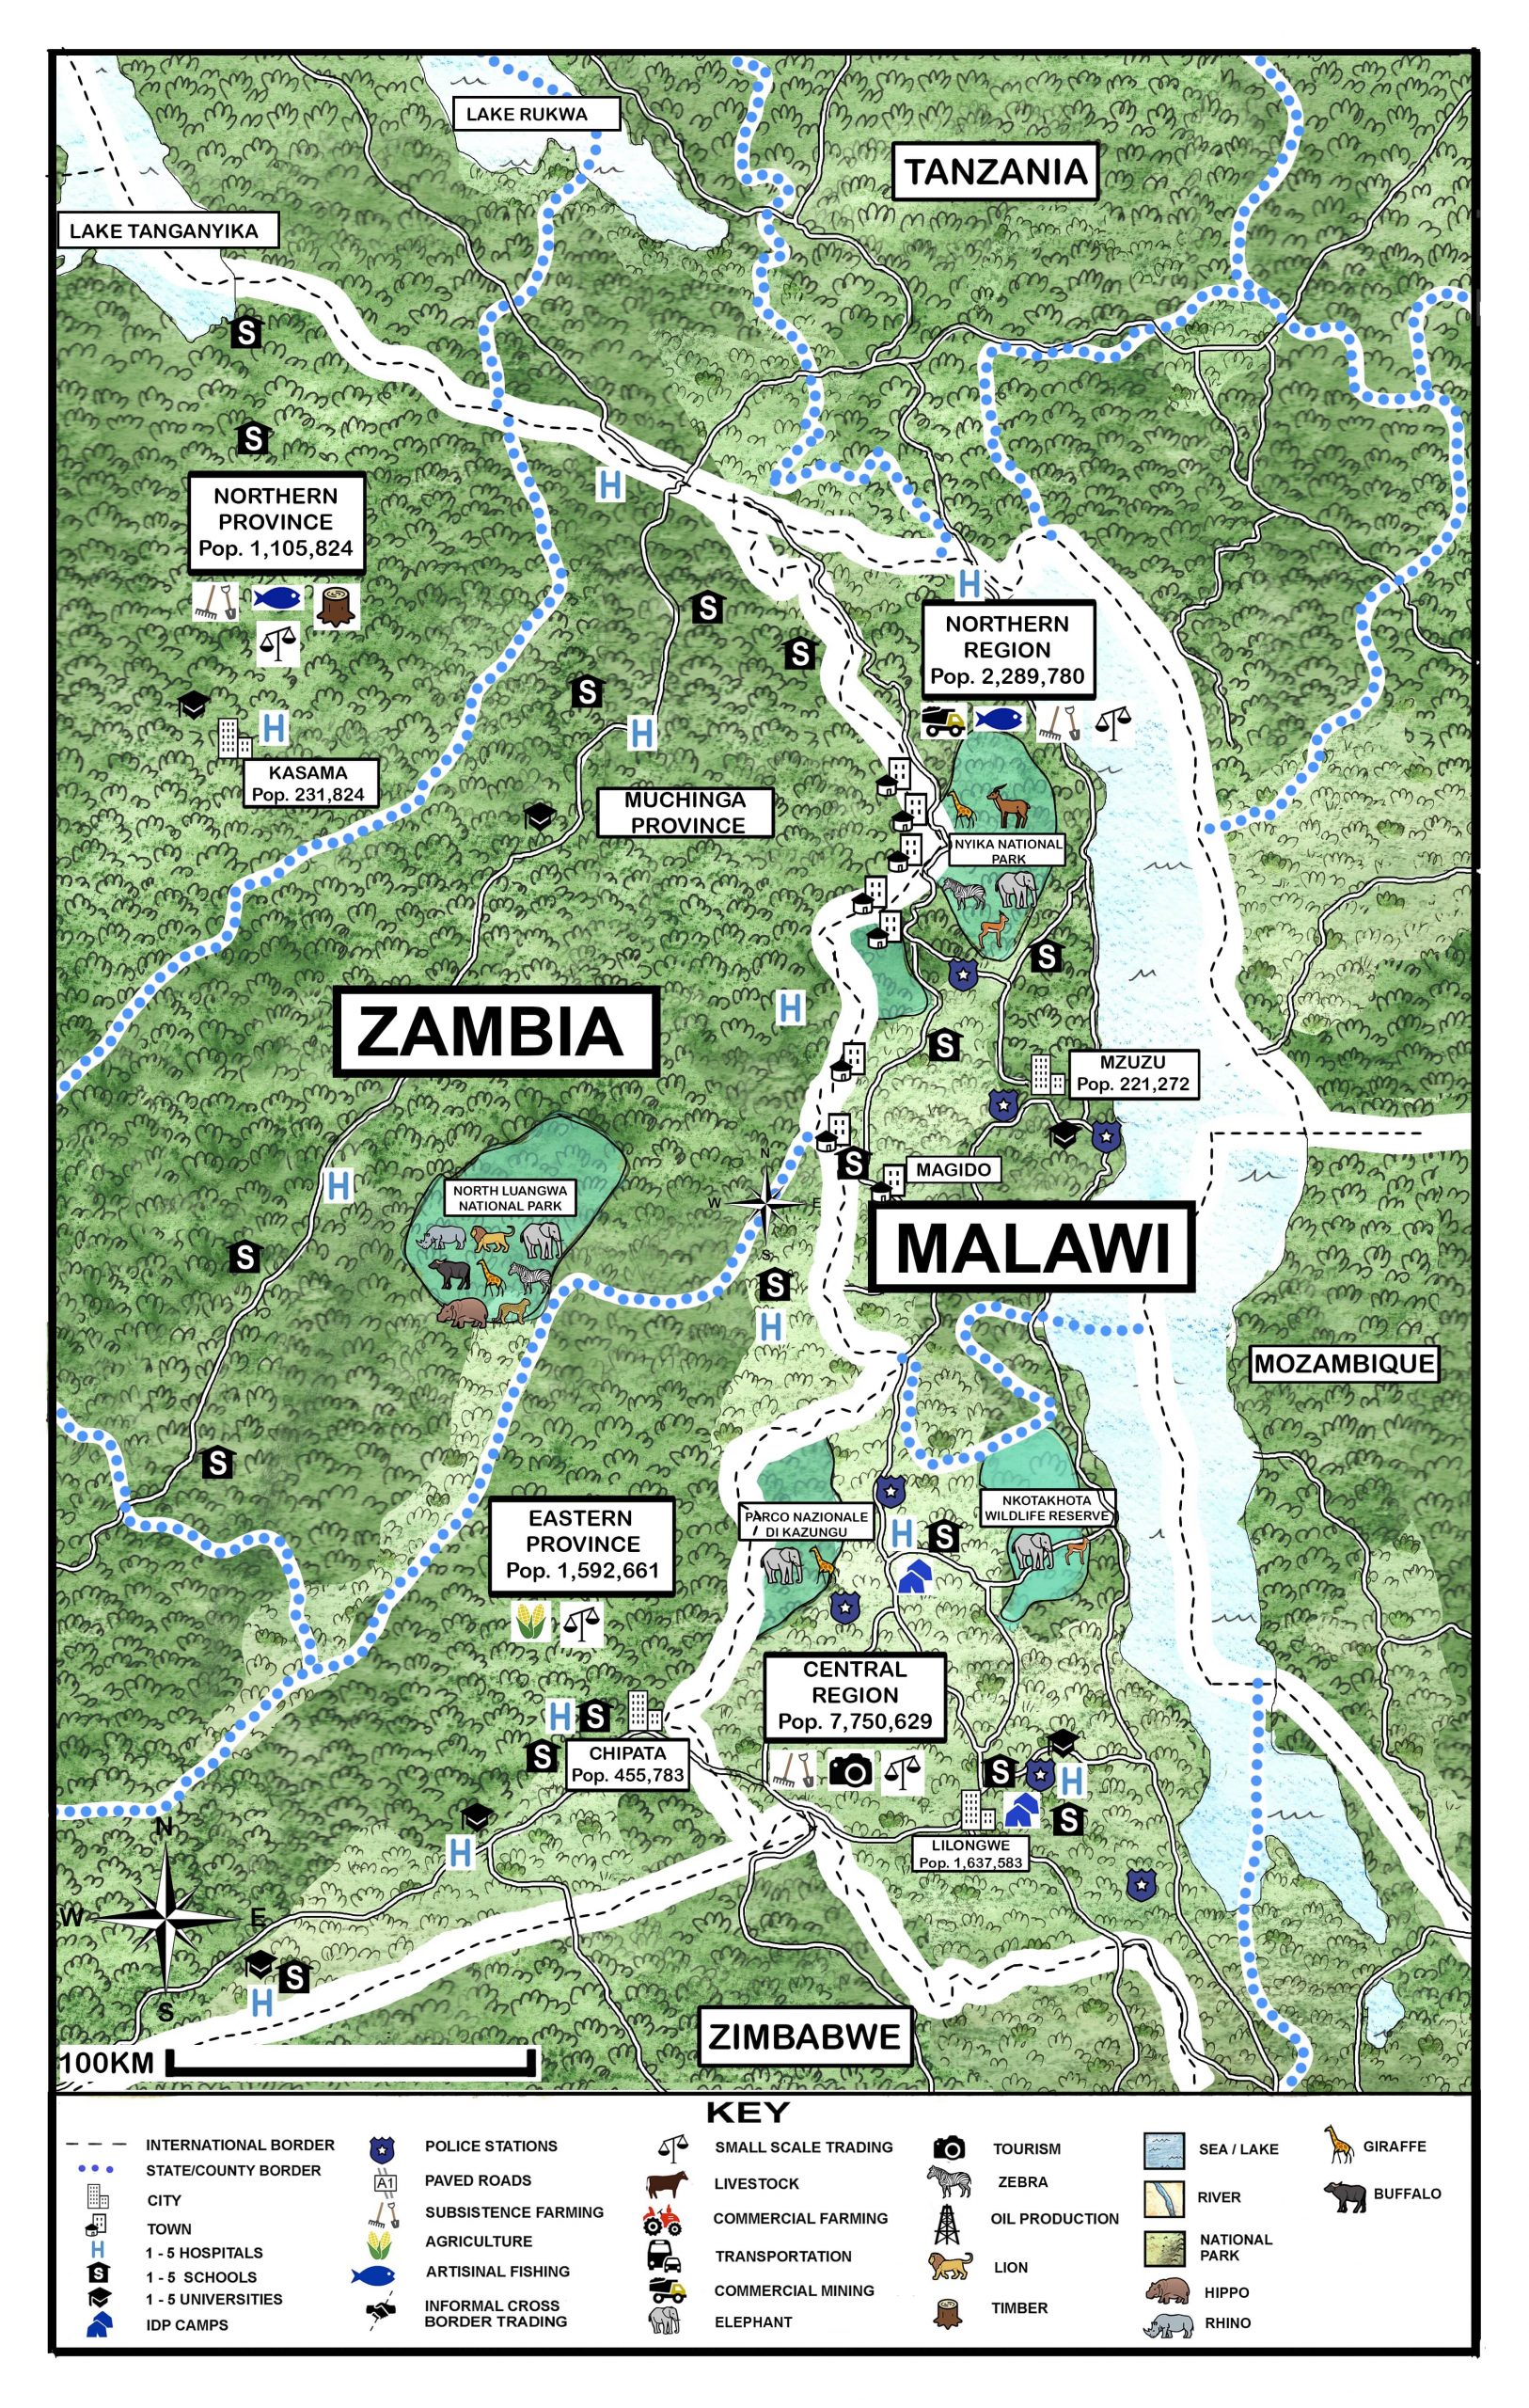 MALAWI - ZAMBIA_illustration